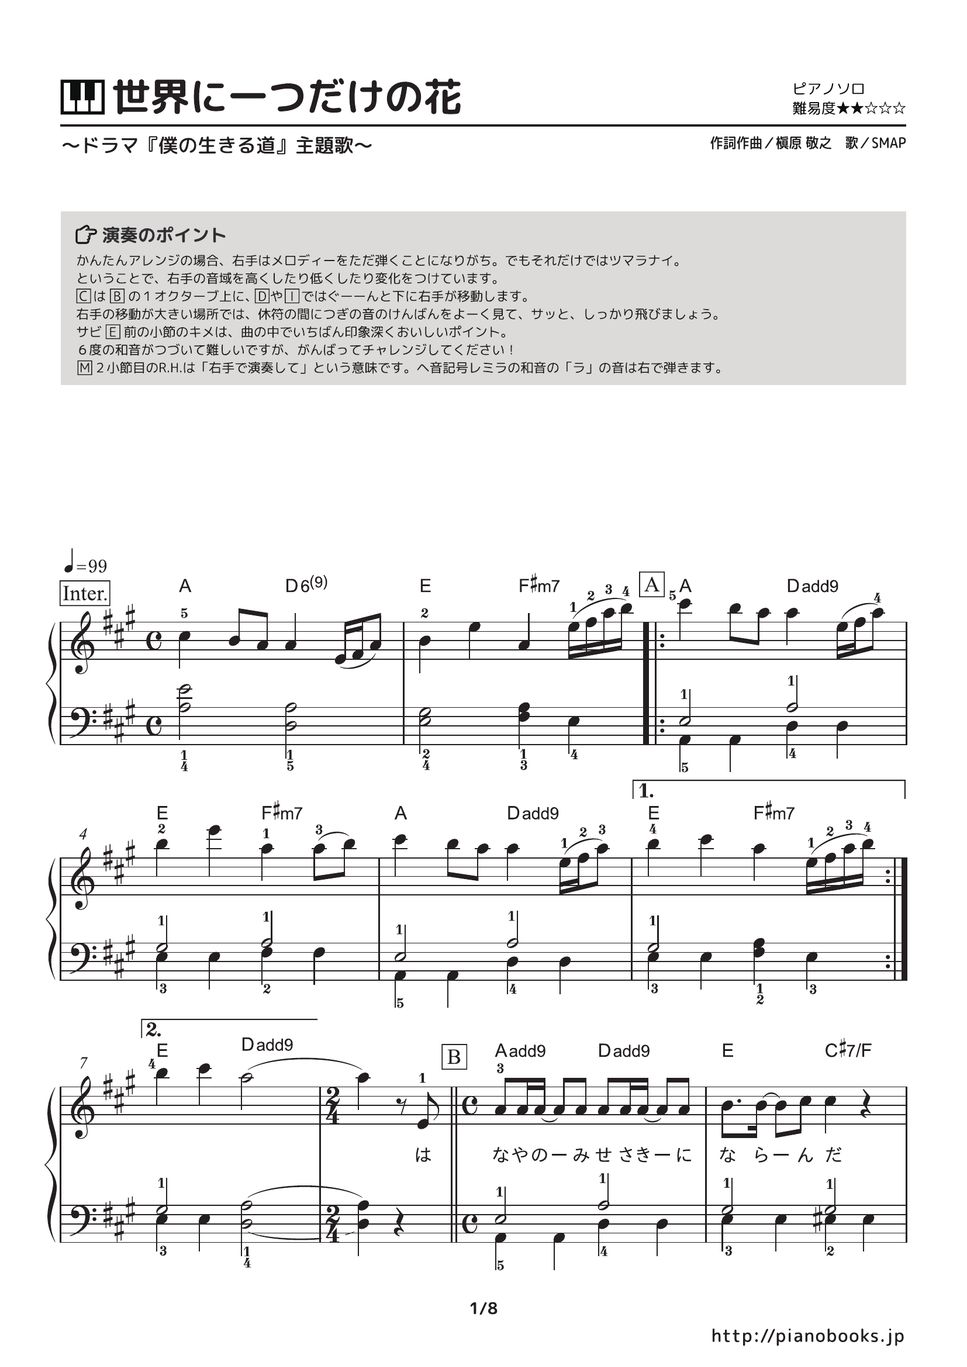 SMAP - 世界に一つだけの花 (ドラマ『僕の生きる道』主題歌) 楽譜 by ピアノの本棚